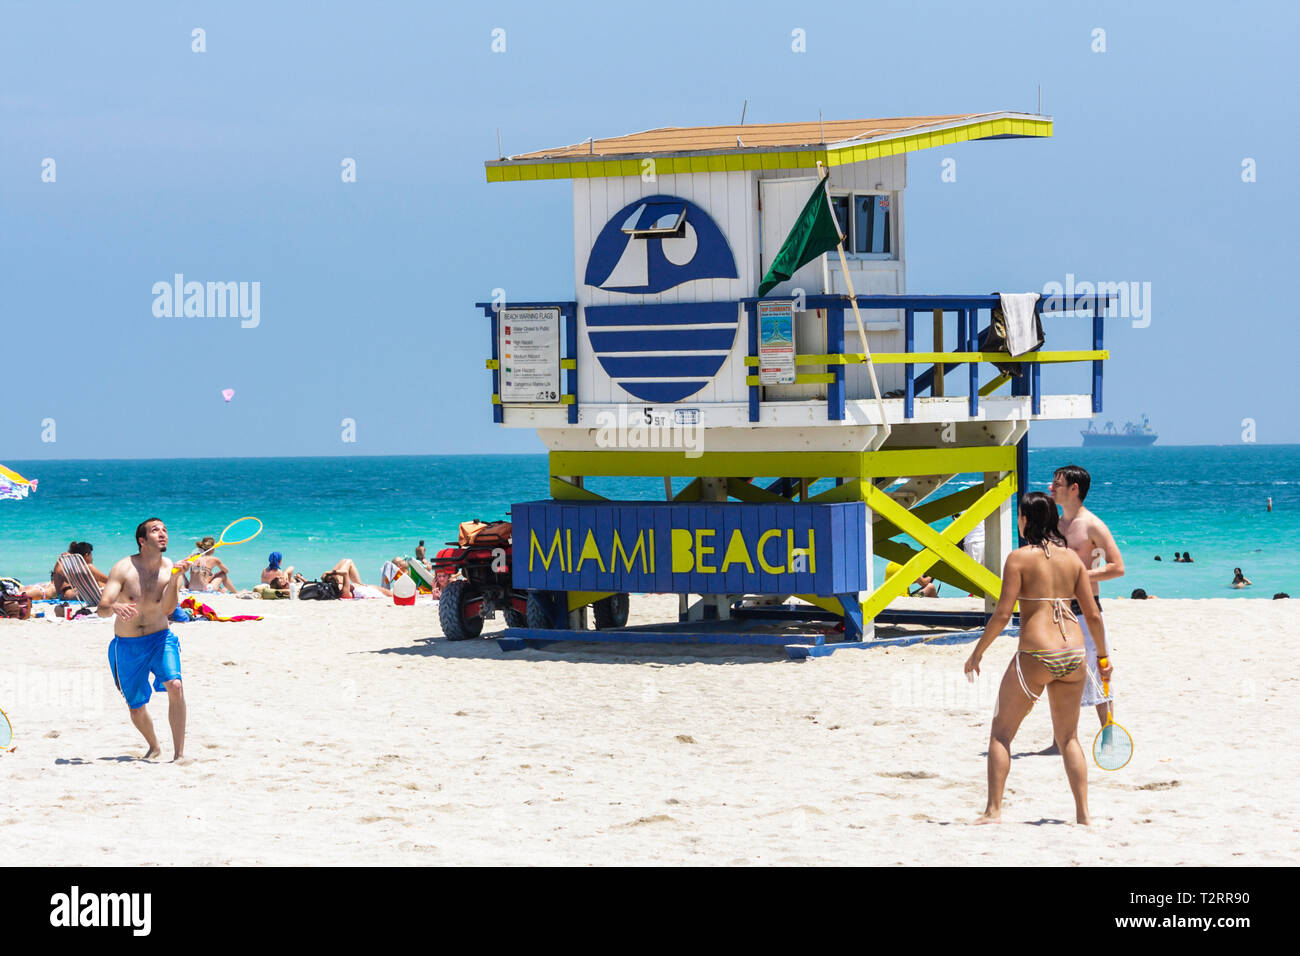 Miami Beach Florida, Atlantic Ocean Water Lifeguard Stand, Turm, Öffentlichkeit, Sicherheit, Sand, Küste, Erwachsene Erwachsene Erwachsene Mann Männer männlich, Frau Frauen weibliche Dame, spielen, b Stockfoto